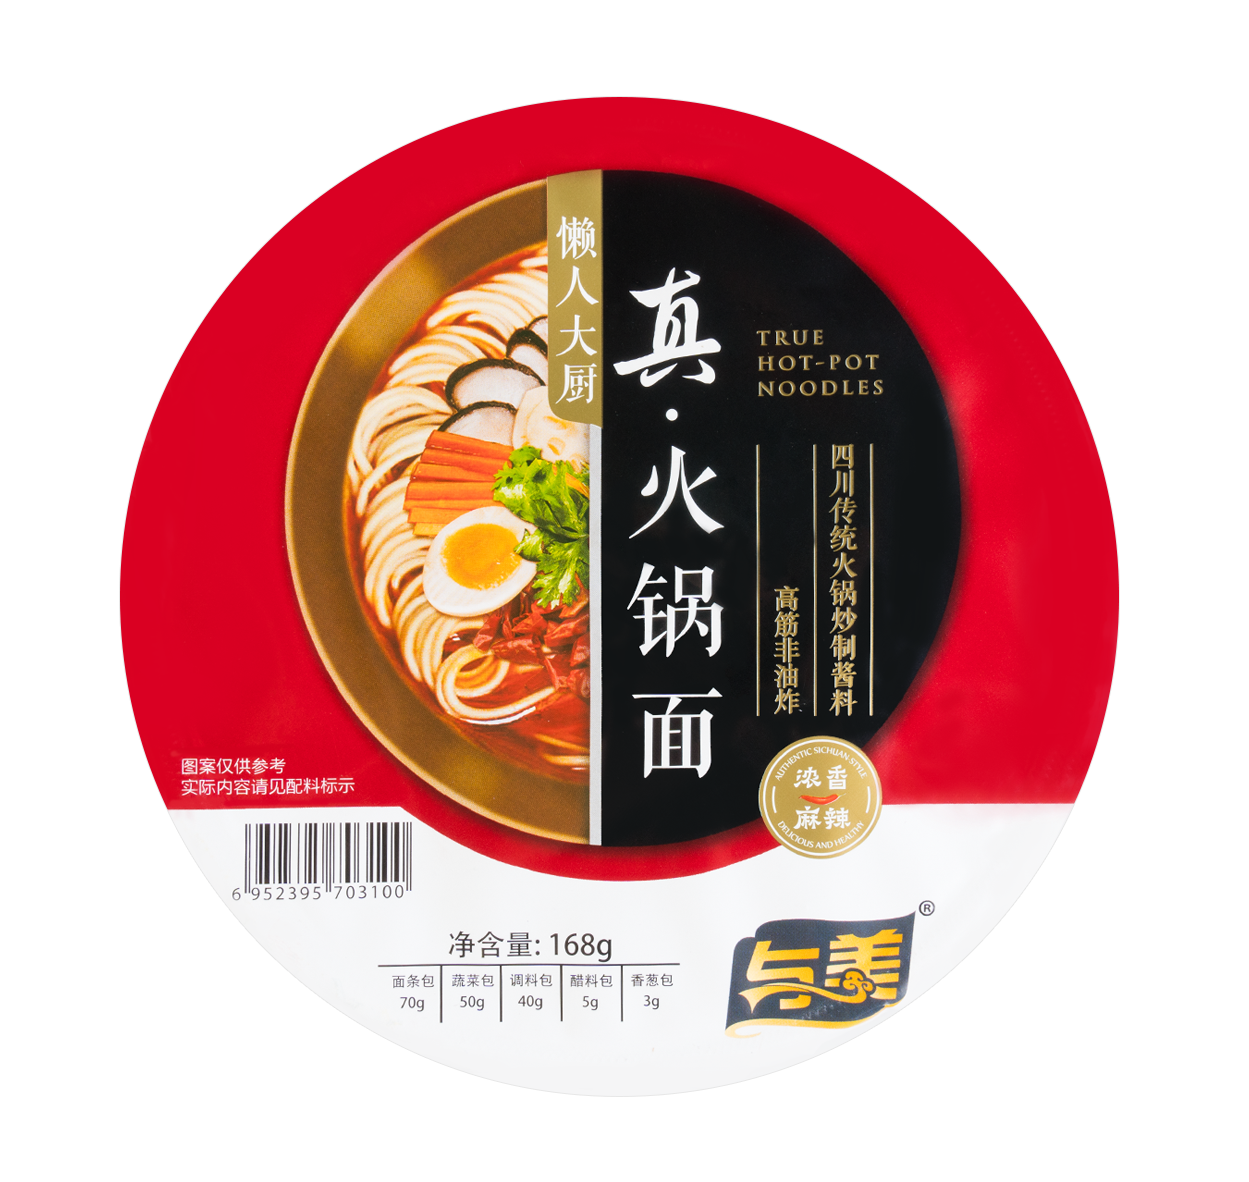 Yumei Sichuan hot pot noodle spicy flavour (与美 懒人大厨 浓香麻辣真火锅面 )